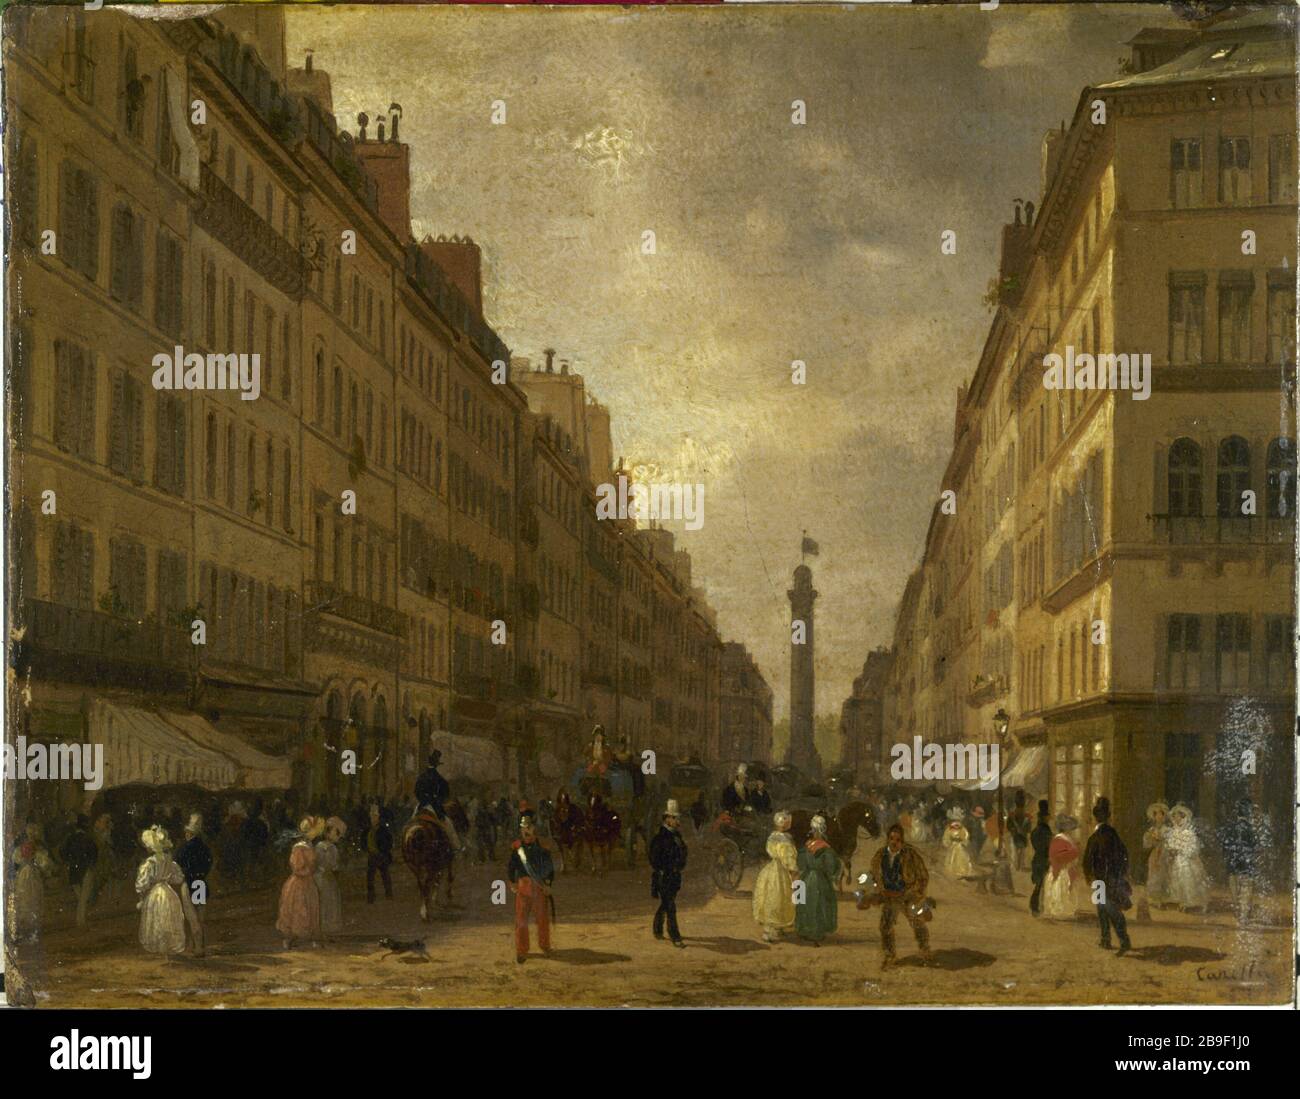 The rue de la Paix Giuseppe Canella (1788-1847). "La rue de la Paix". Paris, musée Carnavalet. Stock Photo